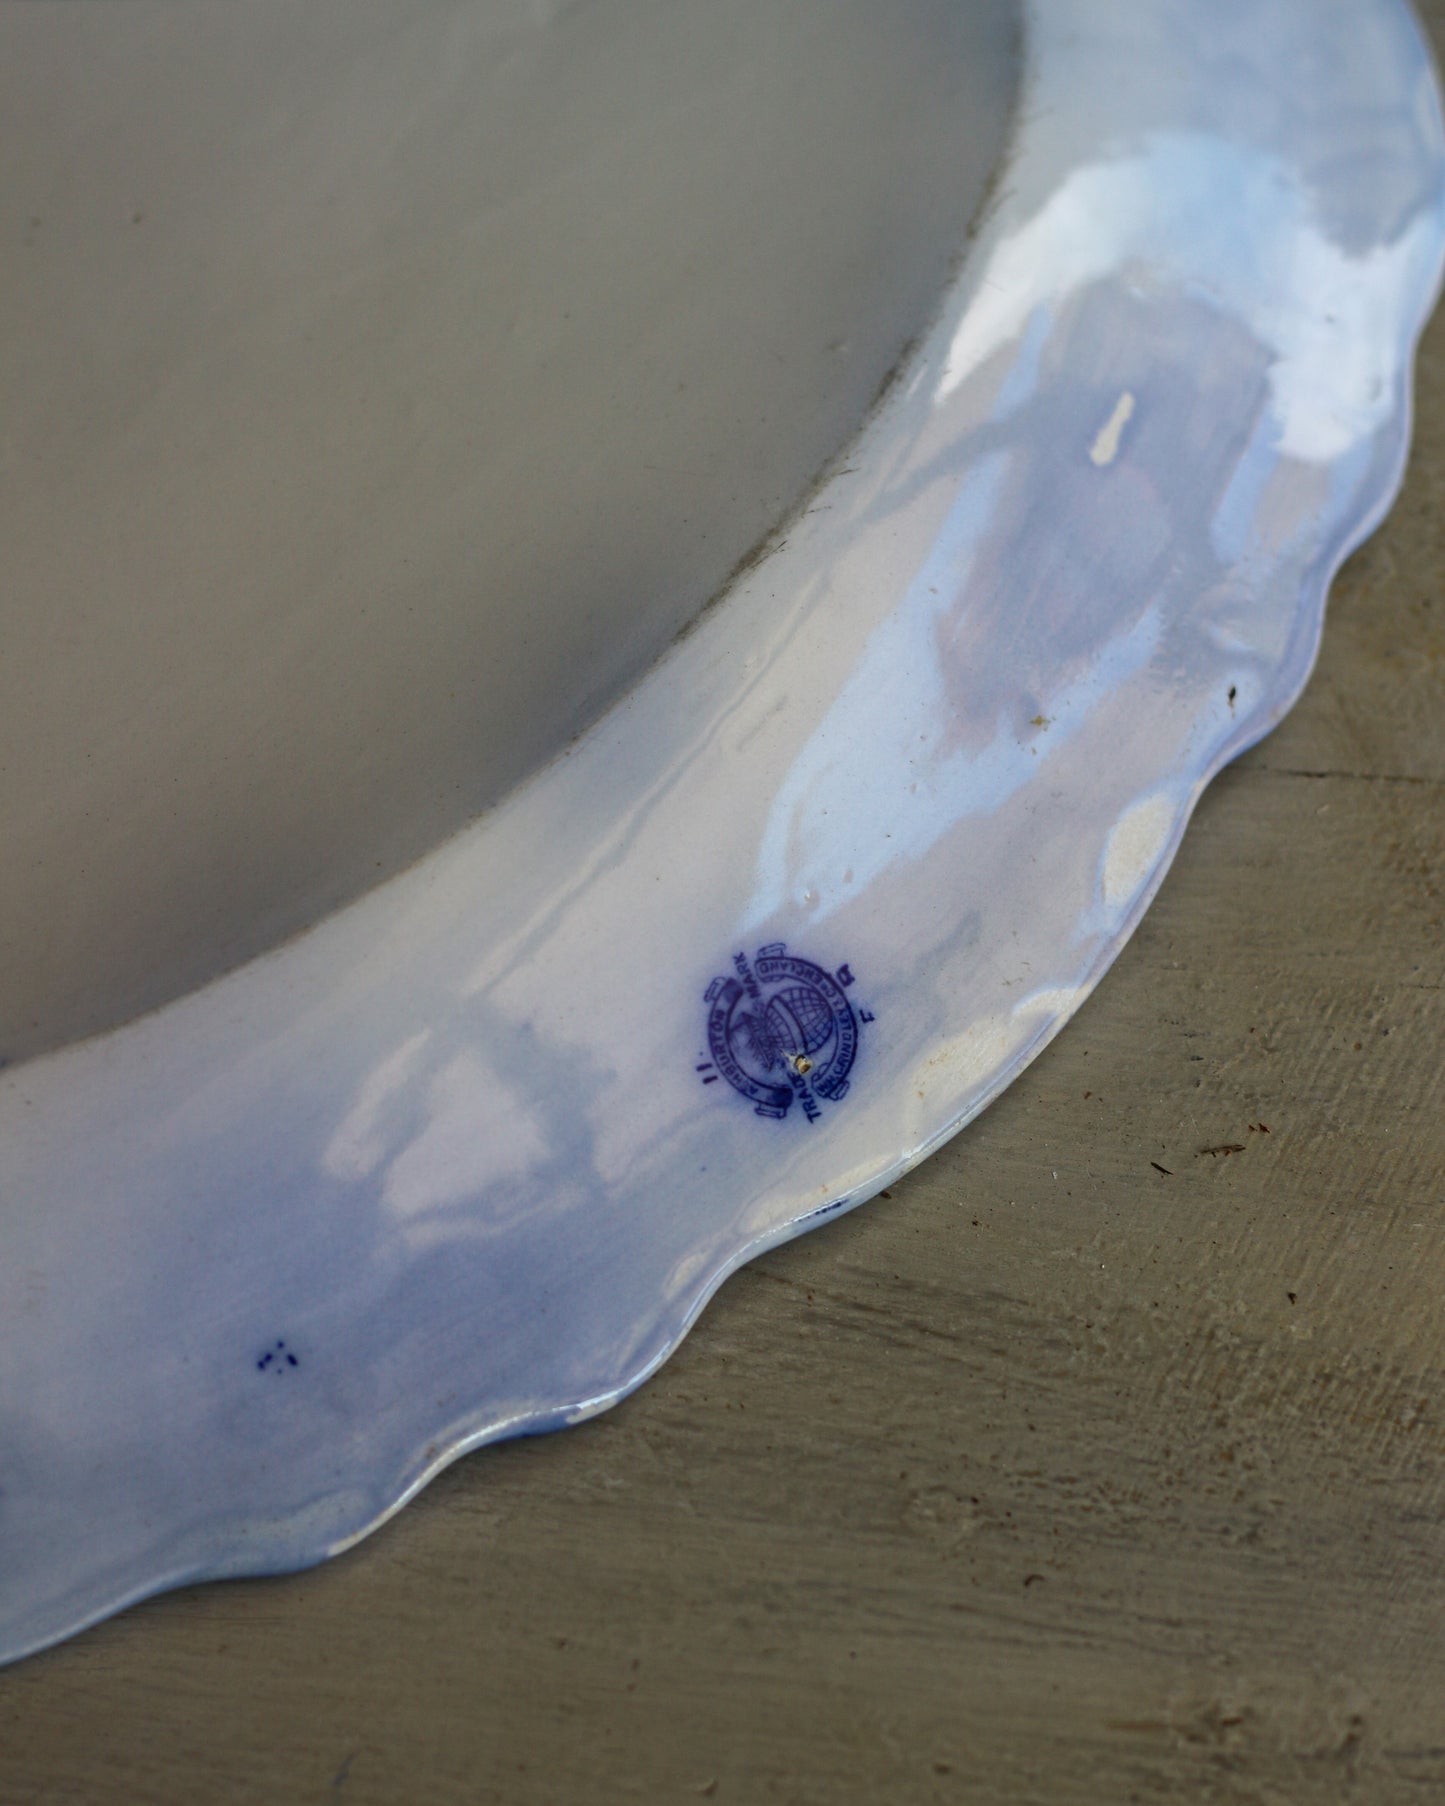 Vassoio ovale porcellana inglese con decoro blu